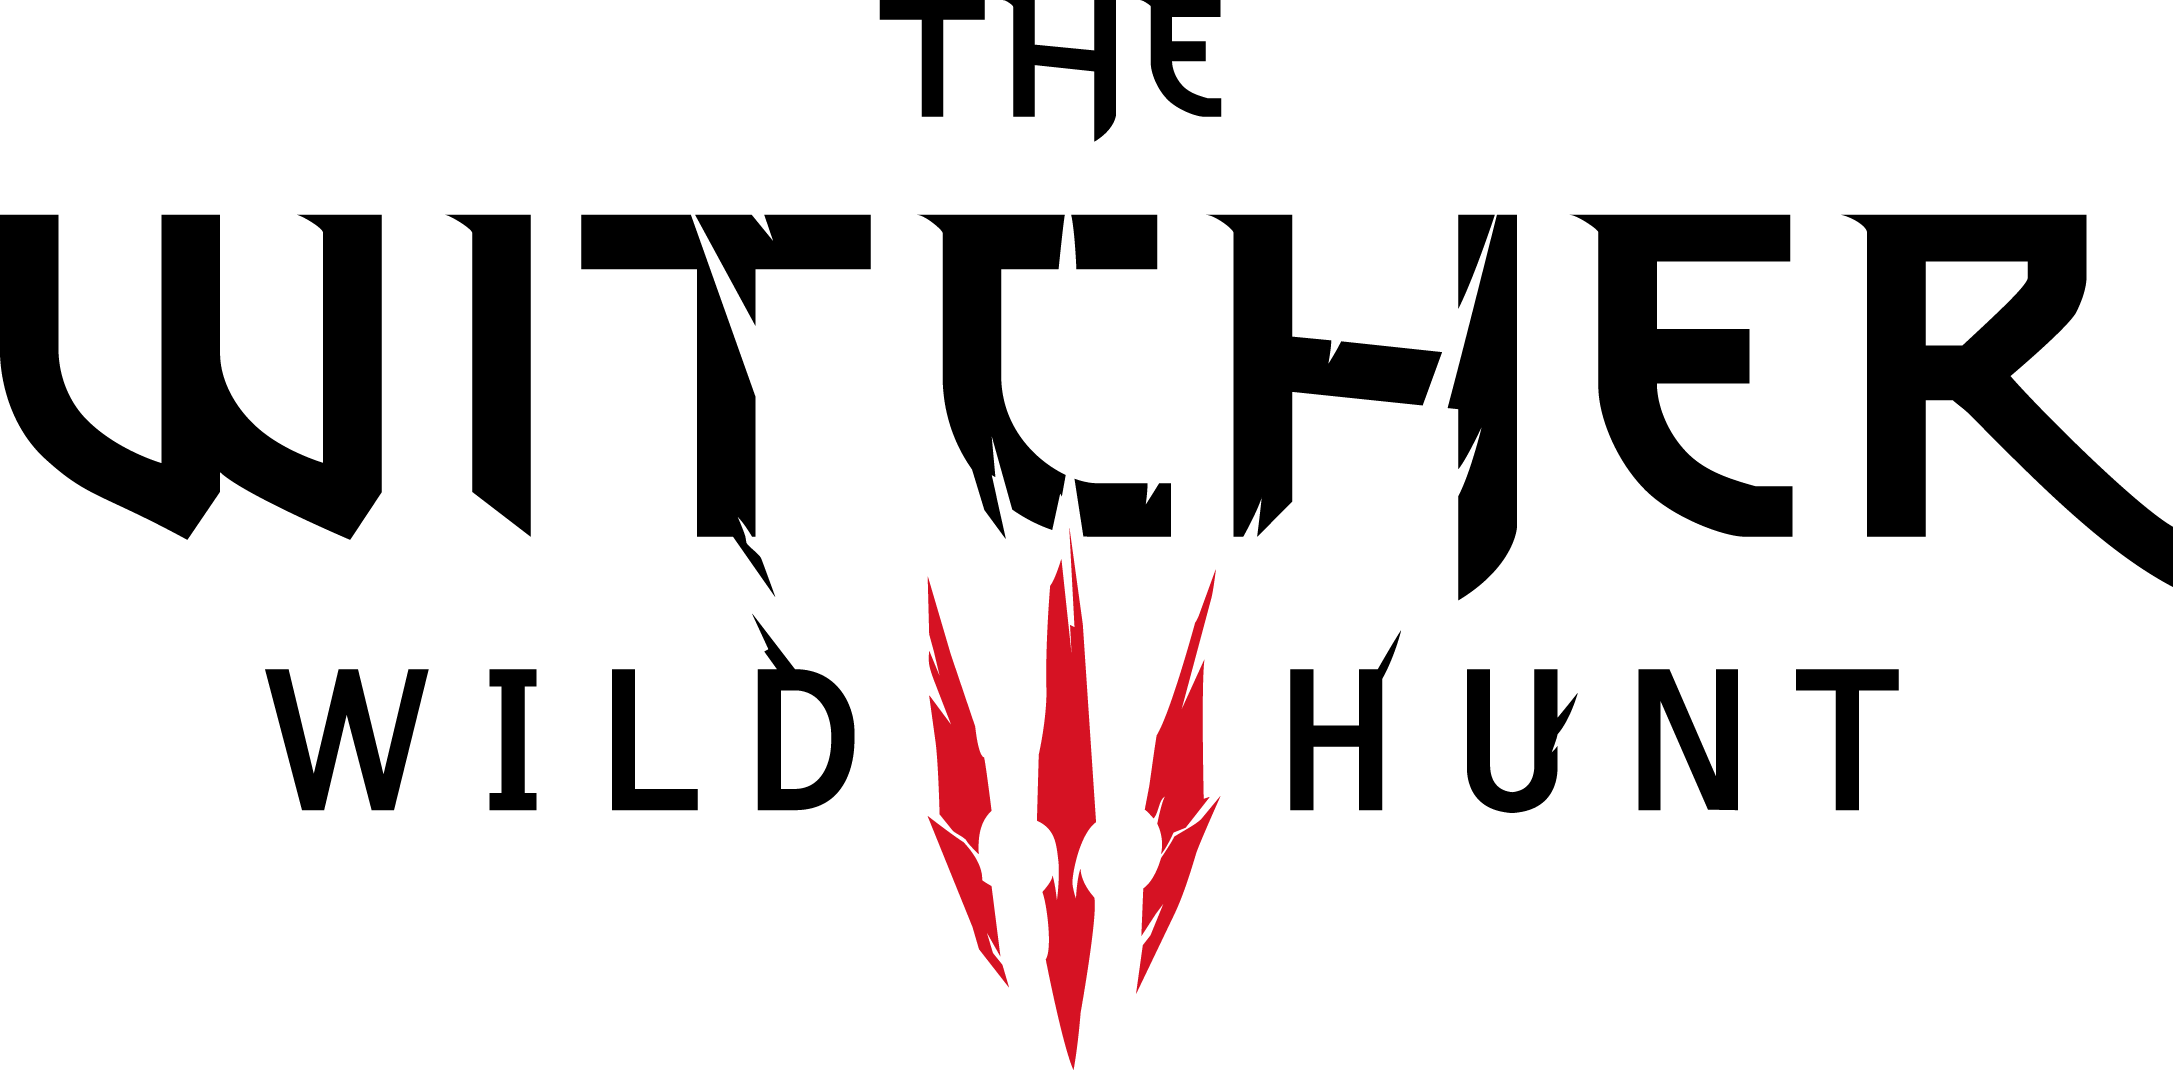 Witcher Logo